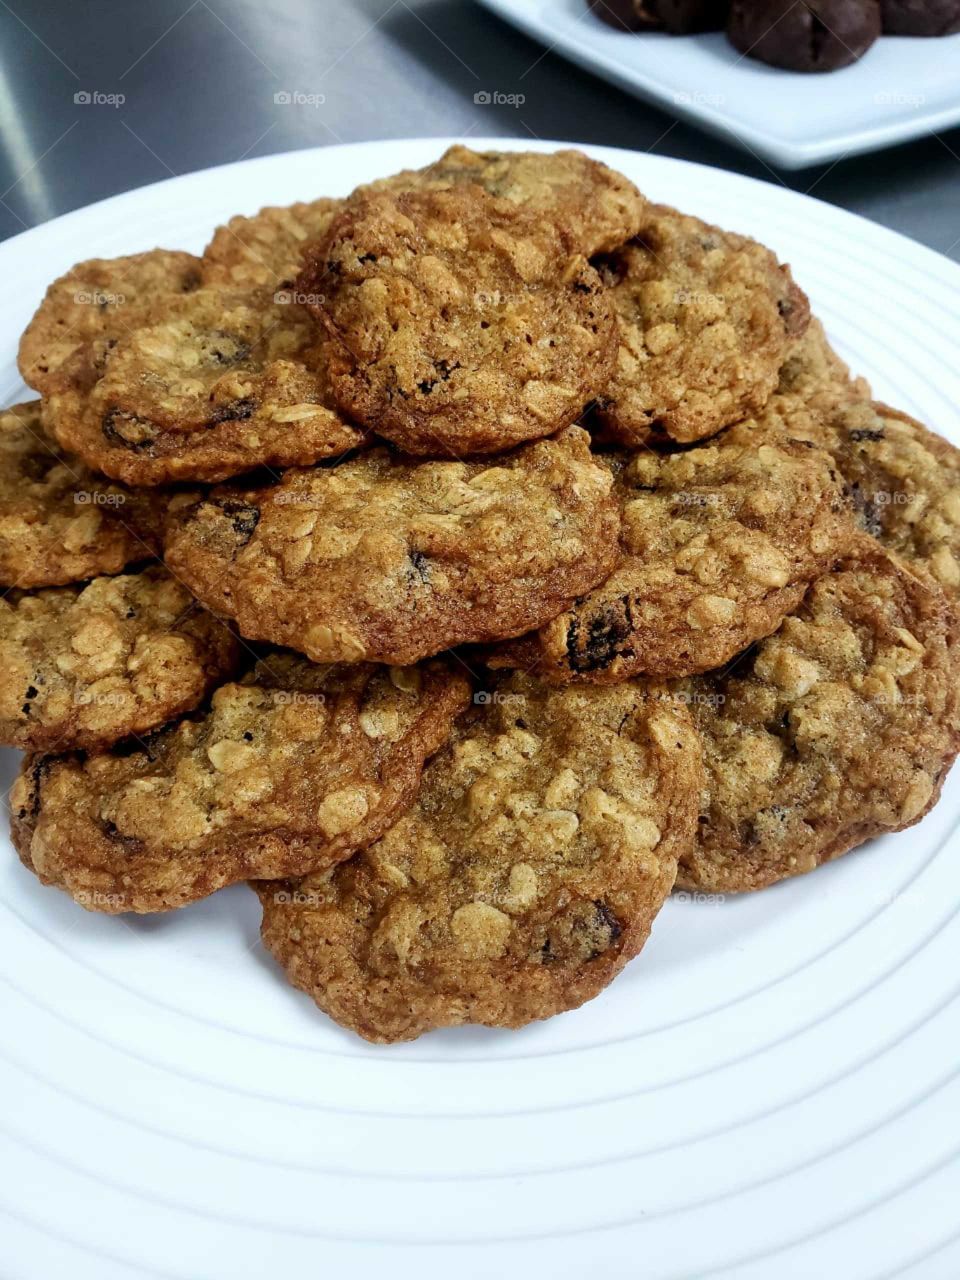 Cookies oats